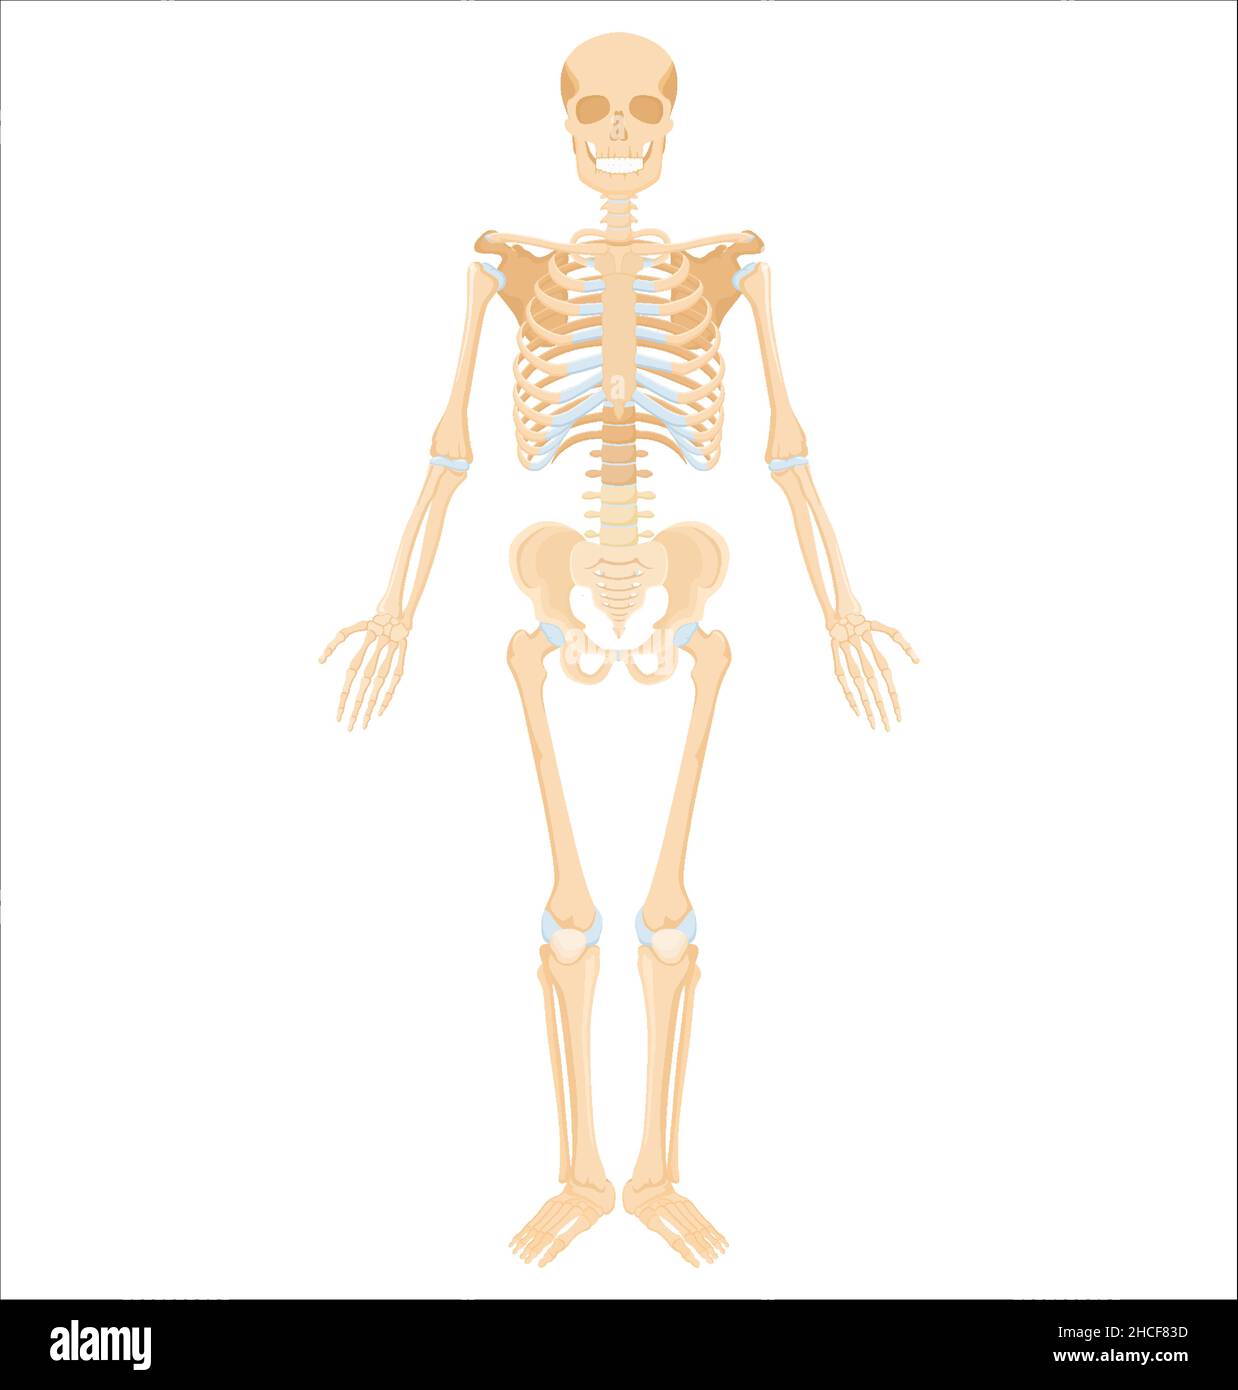 Scheletro umano. Banner anatomico medico. Ossa gialle realistiche degli arti o del cranio, tronco con colonna vertebrale e costole. Vista frontale del sistema scheletrico isolato Illustrazione Vettoriale